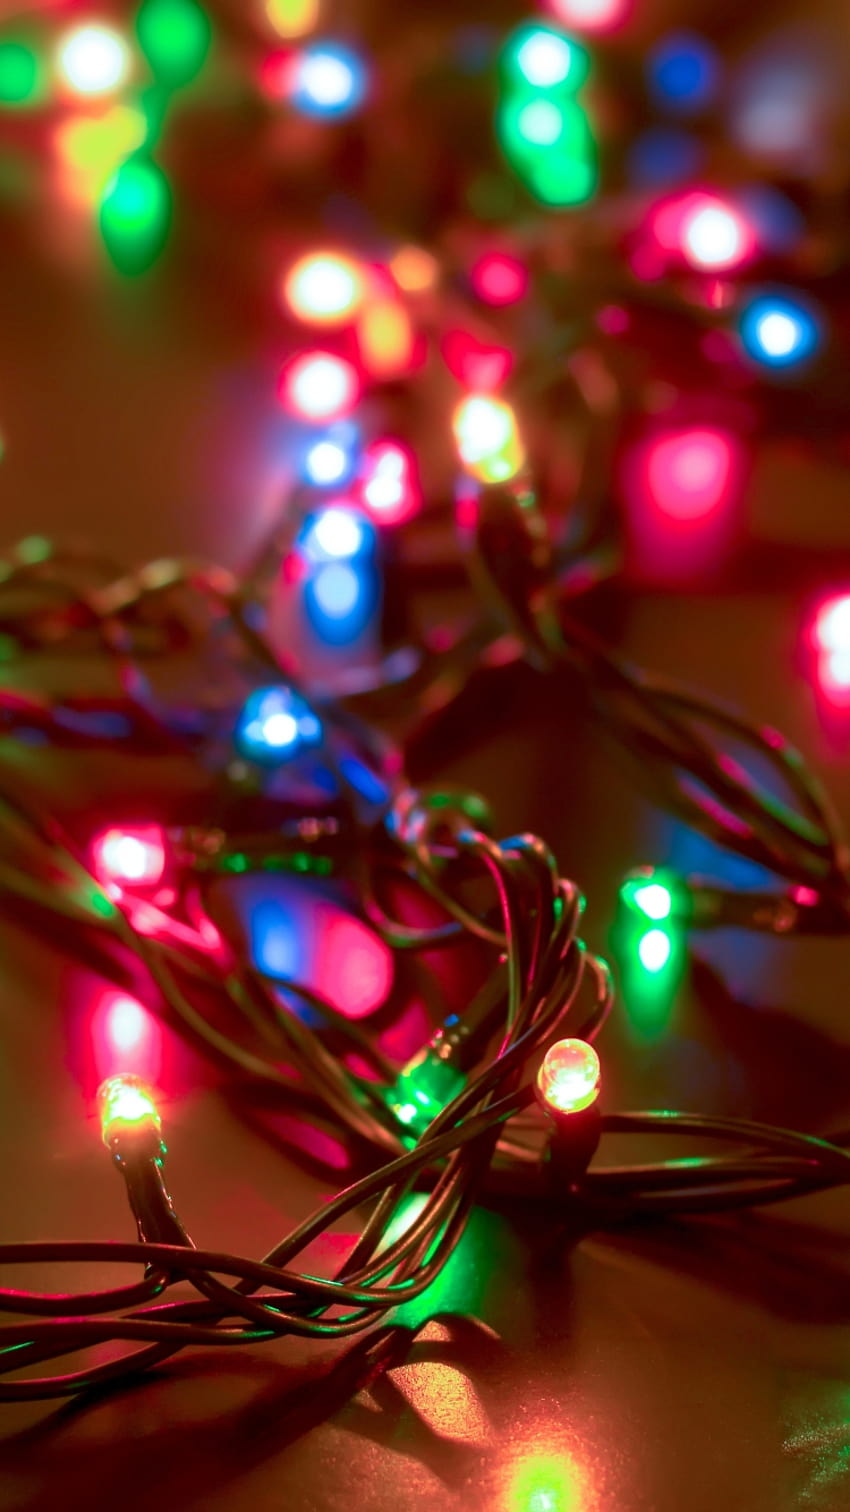 A close up of some christmas lights - Christmas lights